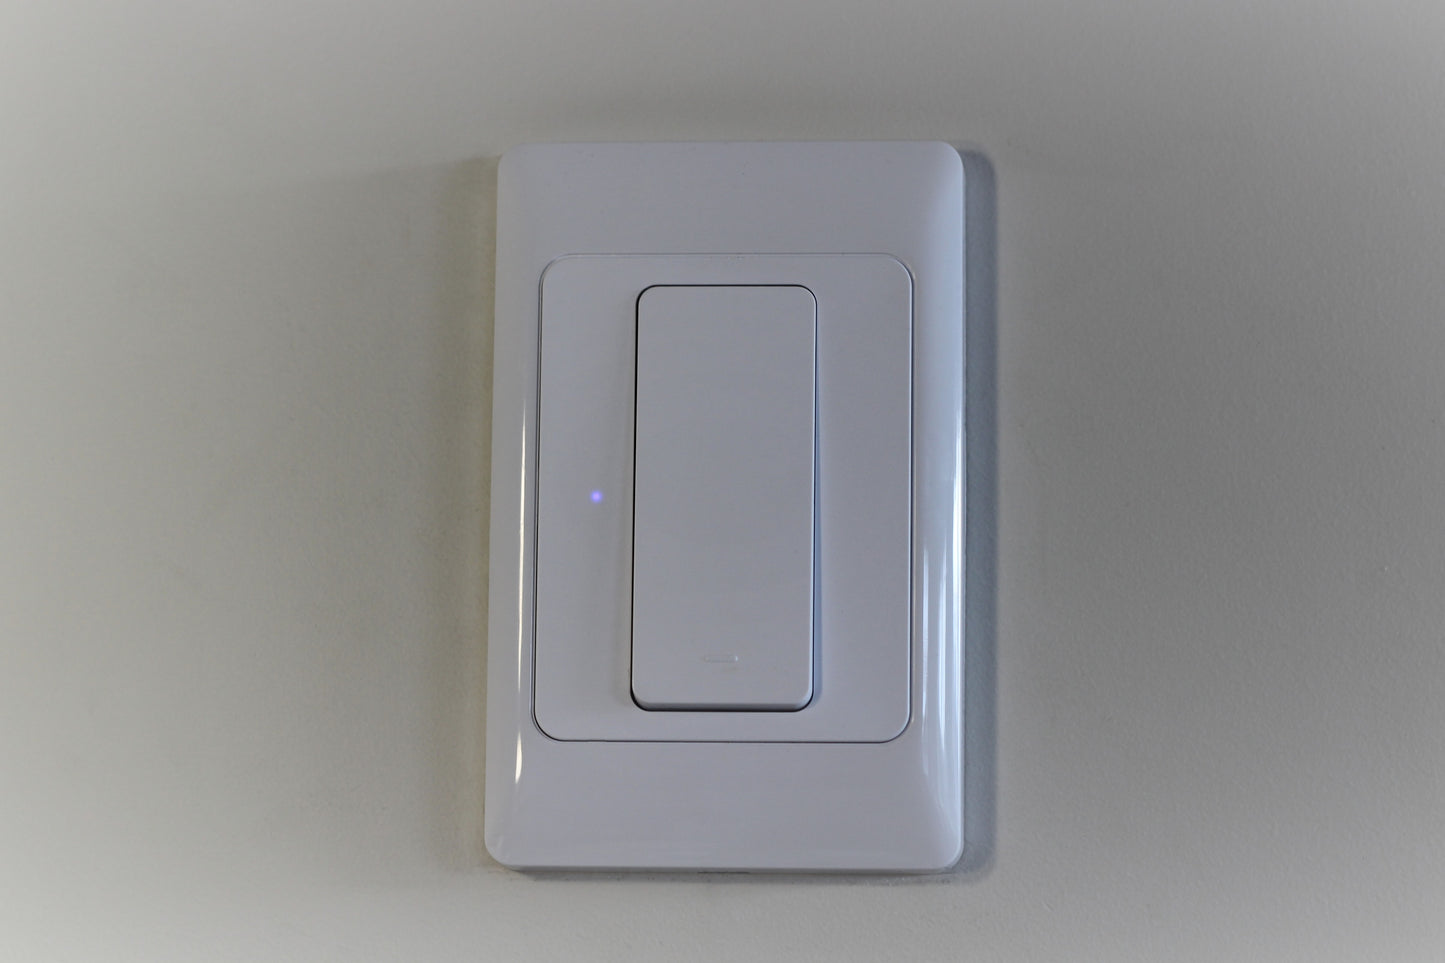 WiFi Smart Switch - 1 Switch